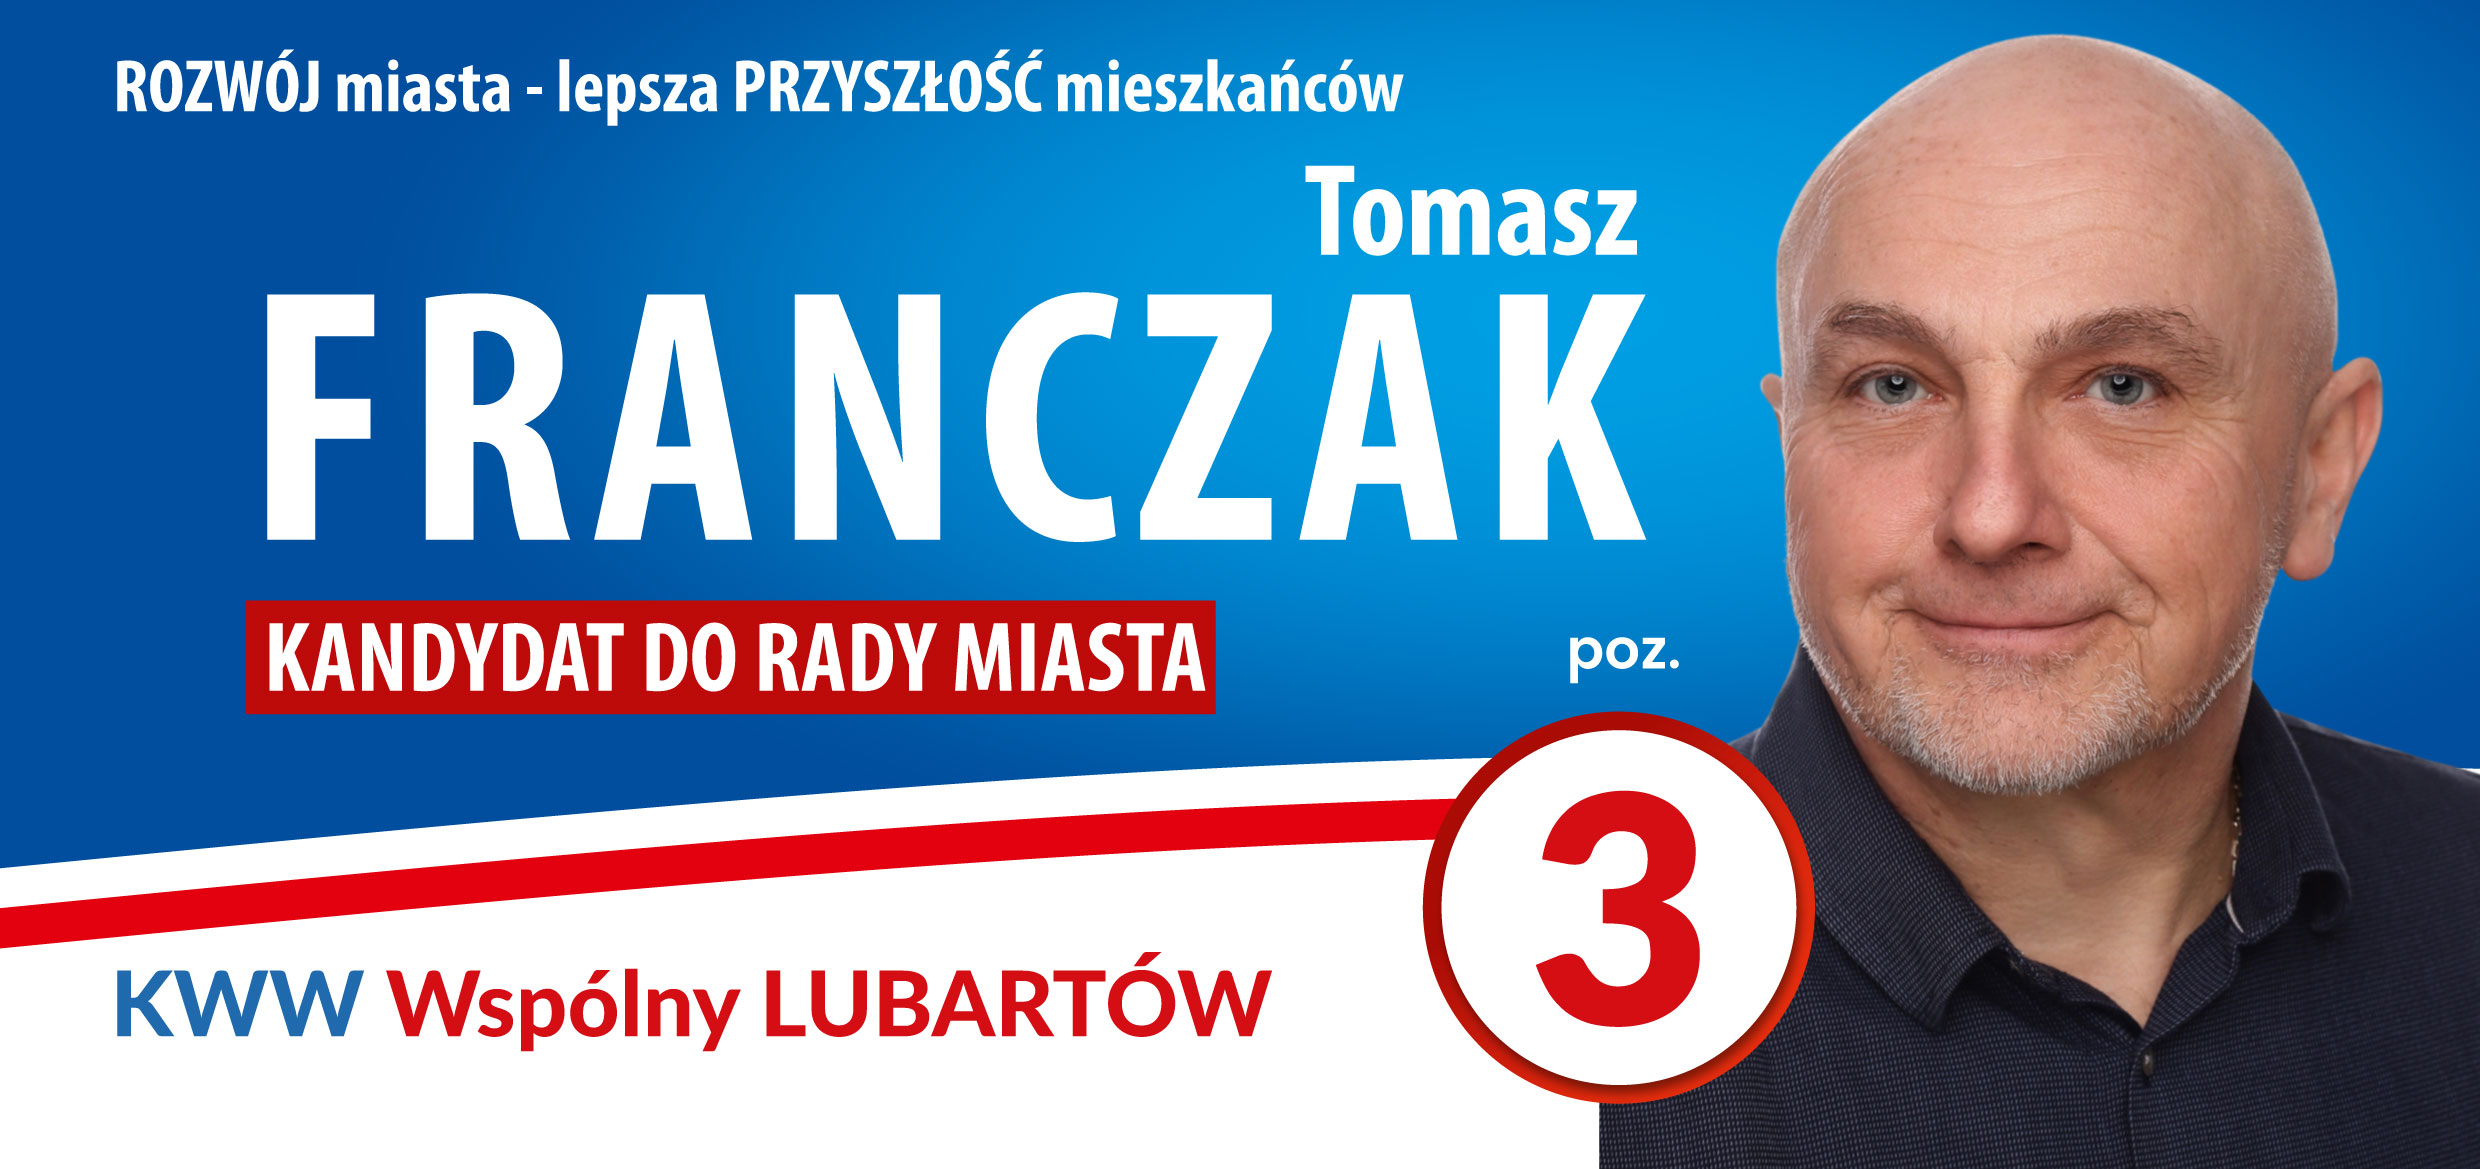 Franczak_Tomasz-1